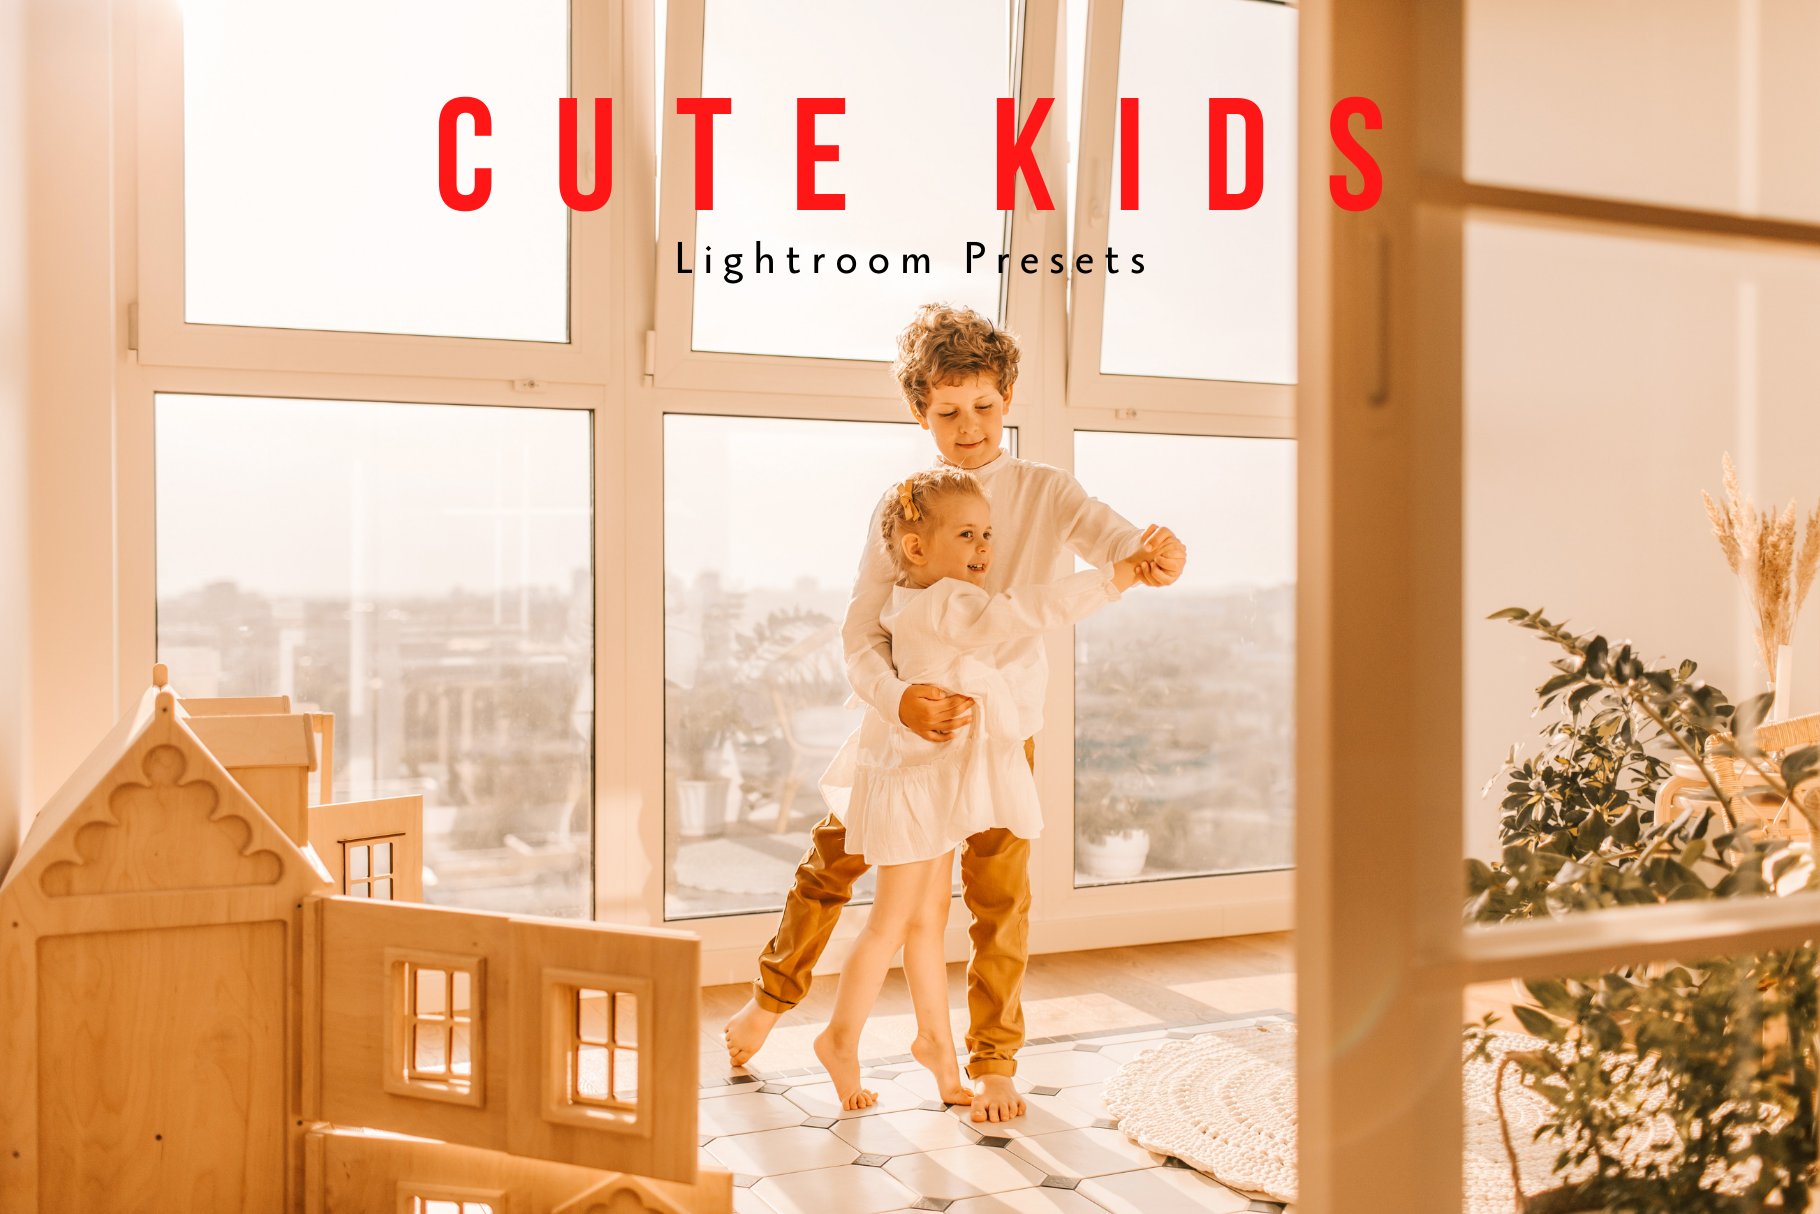 Kids Lightroom Presetscover image.